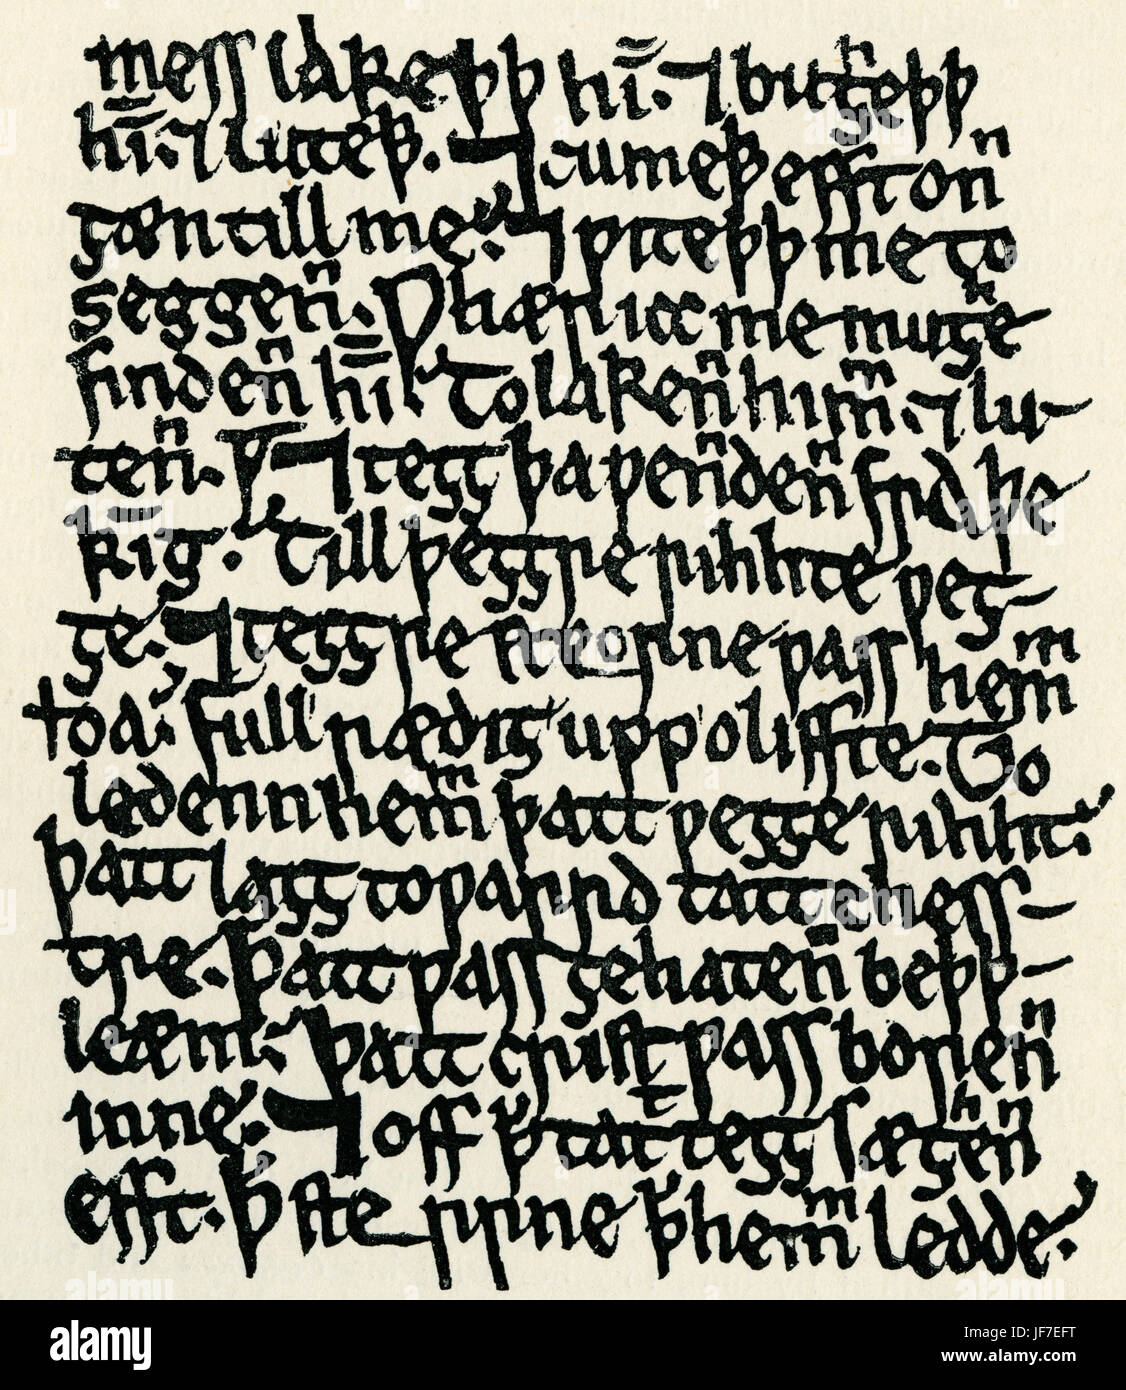 "Ormulum". 12. Jahrhundert englisches Buch der biblischen Exegese von einem Mönch namens Orm oder Ormin. Frühe mittelenglischen Vers. Aus dem Manuskript in der Bodleian Library. Stockfoto